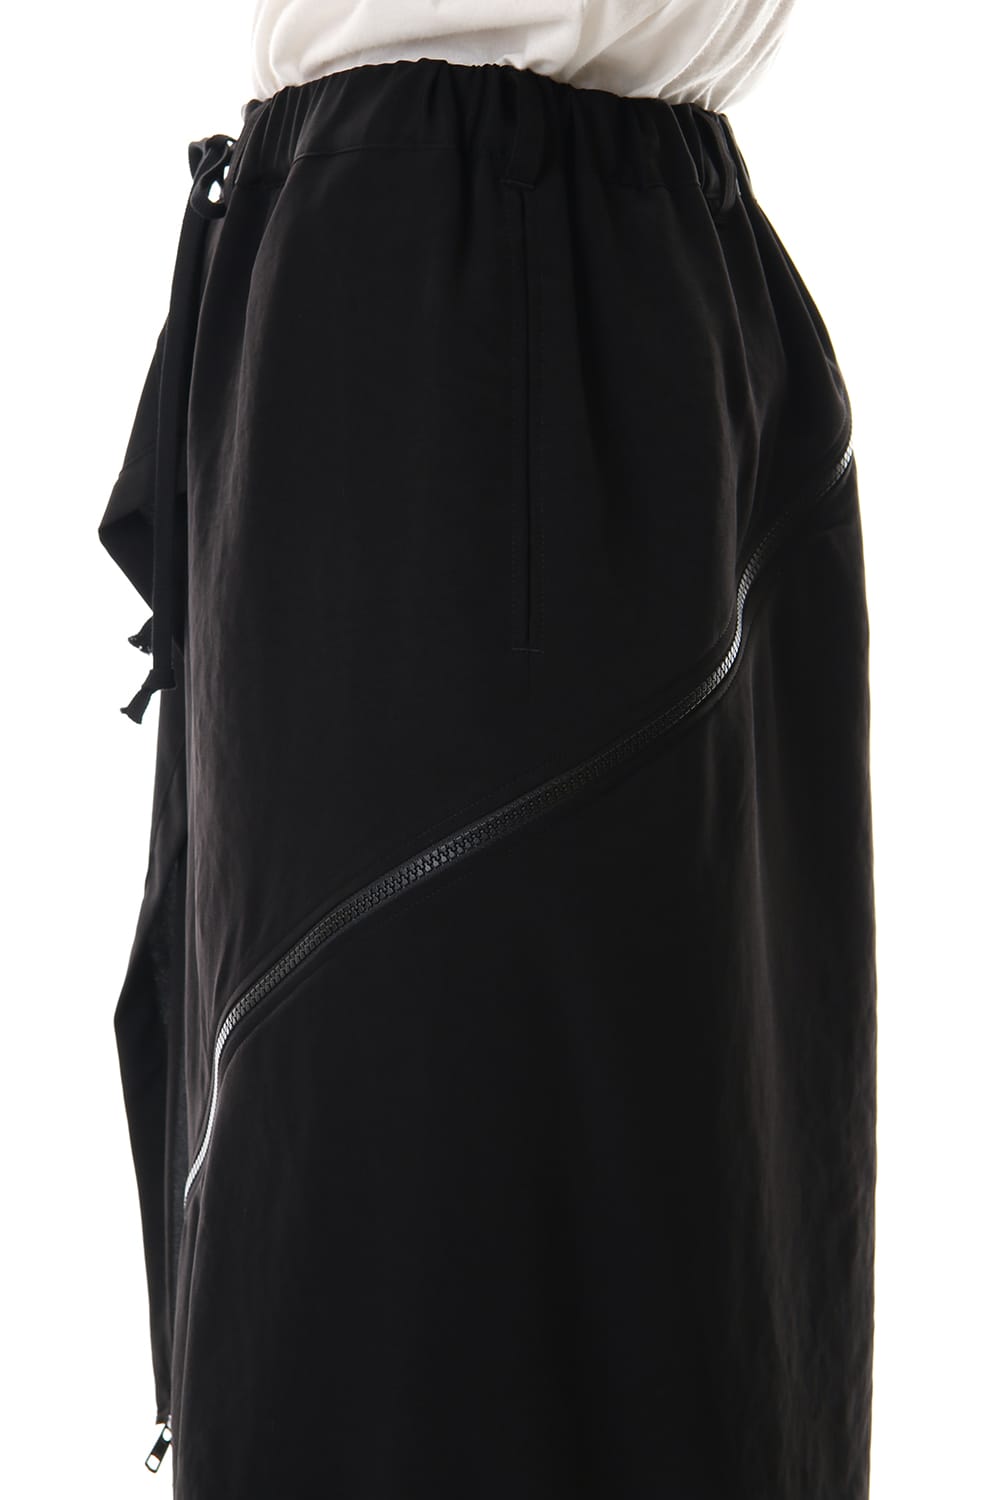 nn-p56-500 | デシン ファブリック ダブル ファスナー スカート パンツ ...